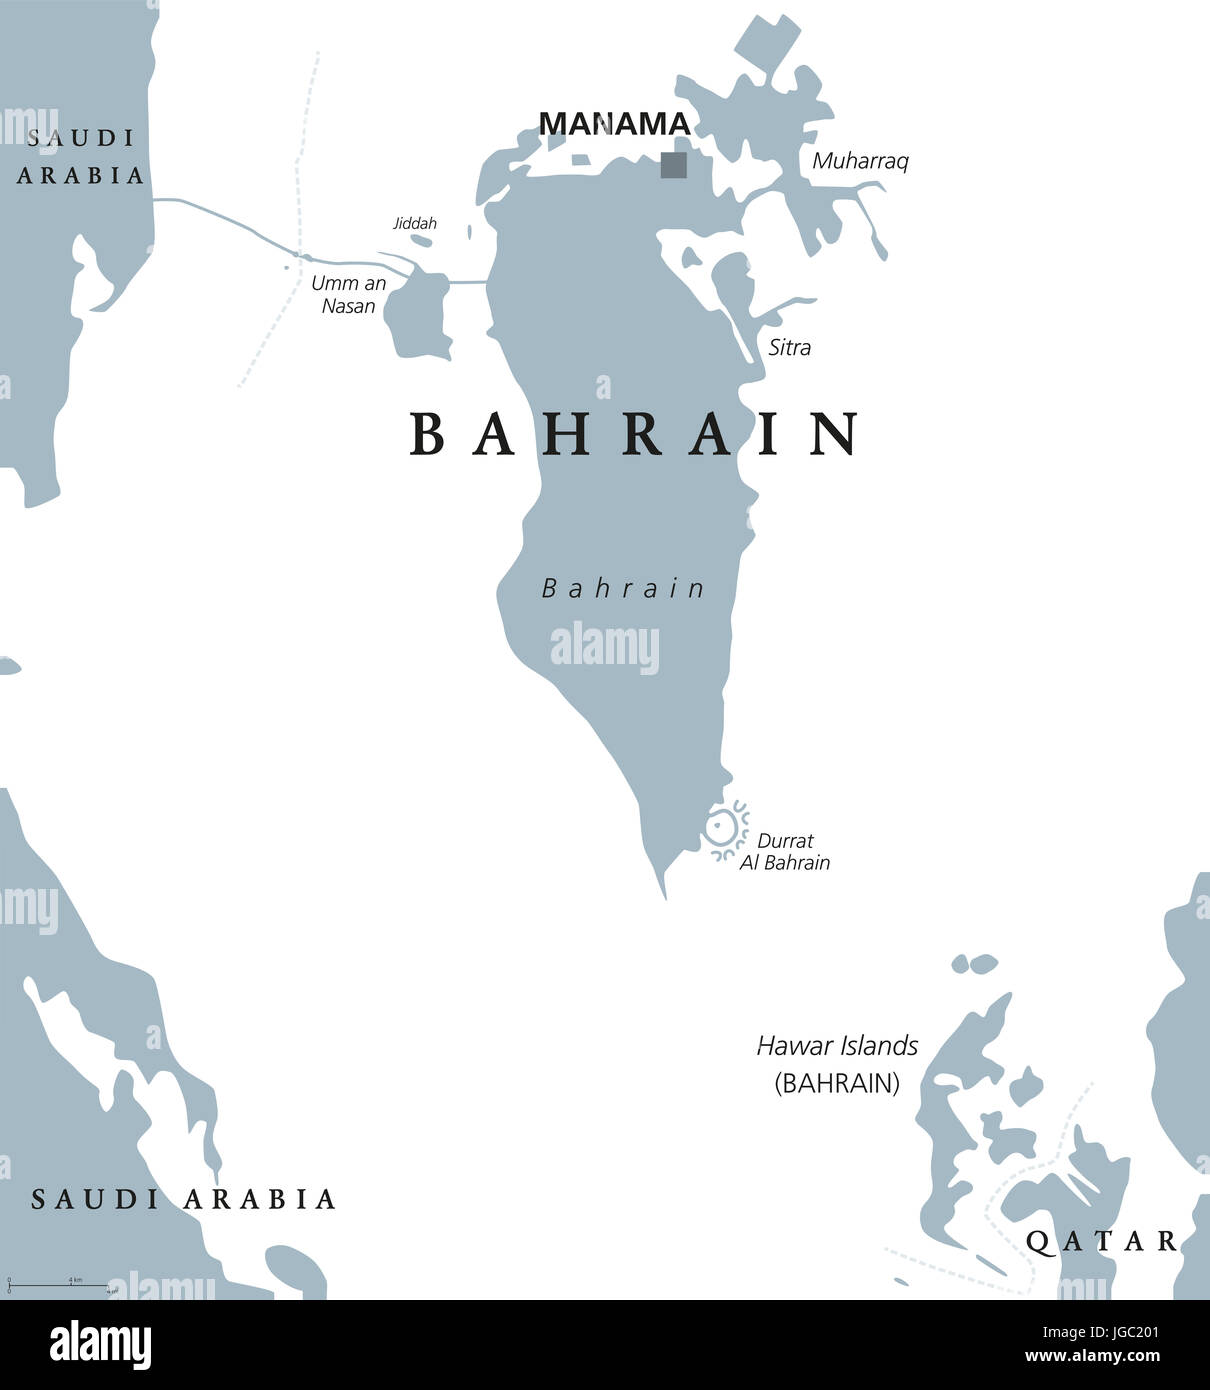 Bahrain mappa politico con capitale Manama. Regno nel Golfo Arabico. Paese insulare e arcipelago tra Qatar e Arabia Saudita. Foto Stock